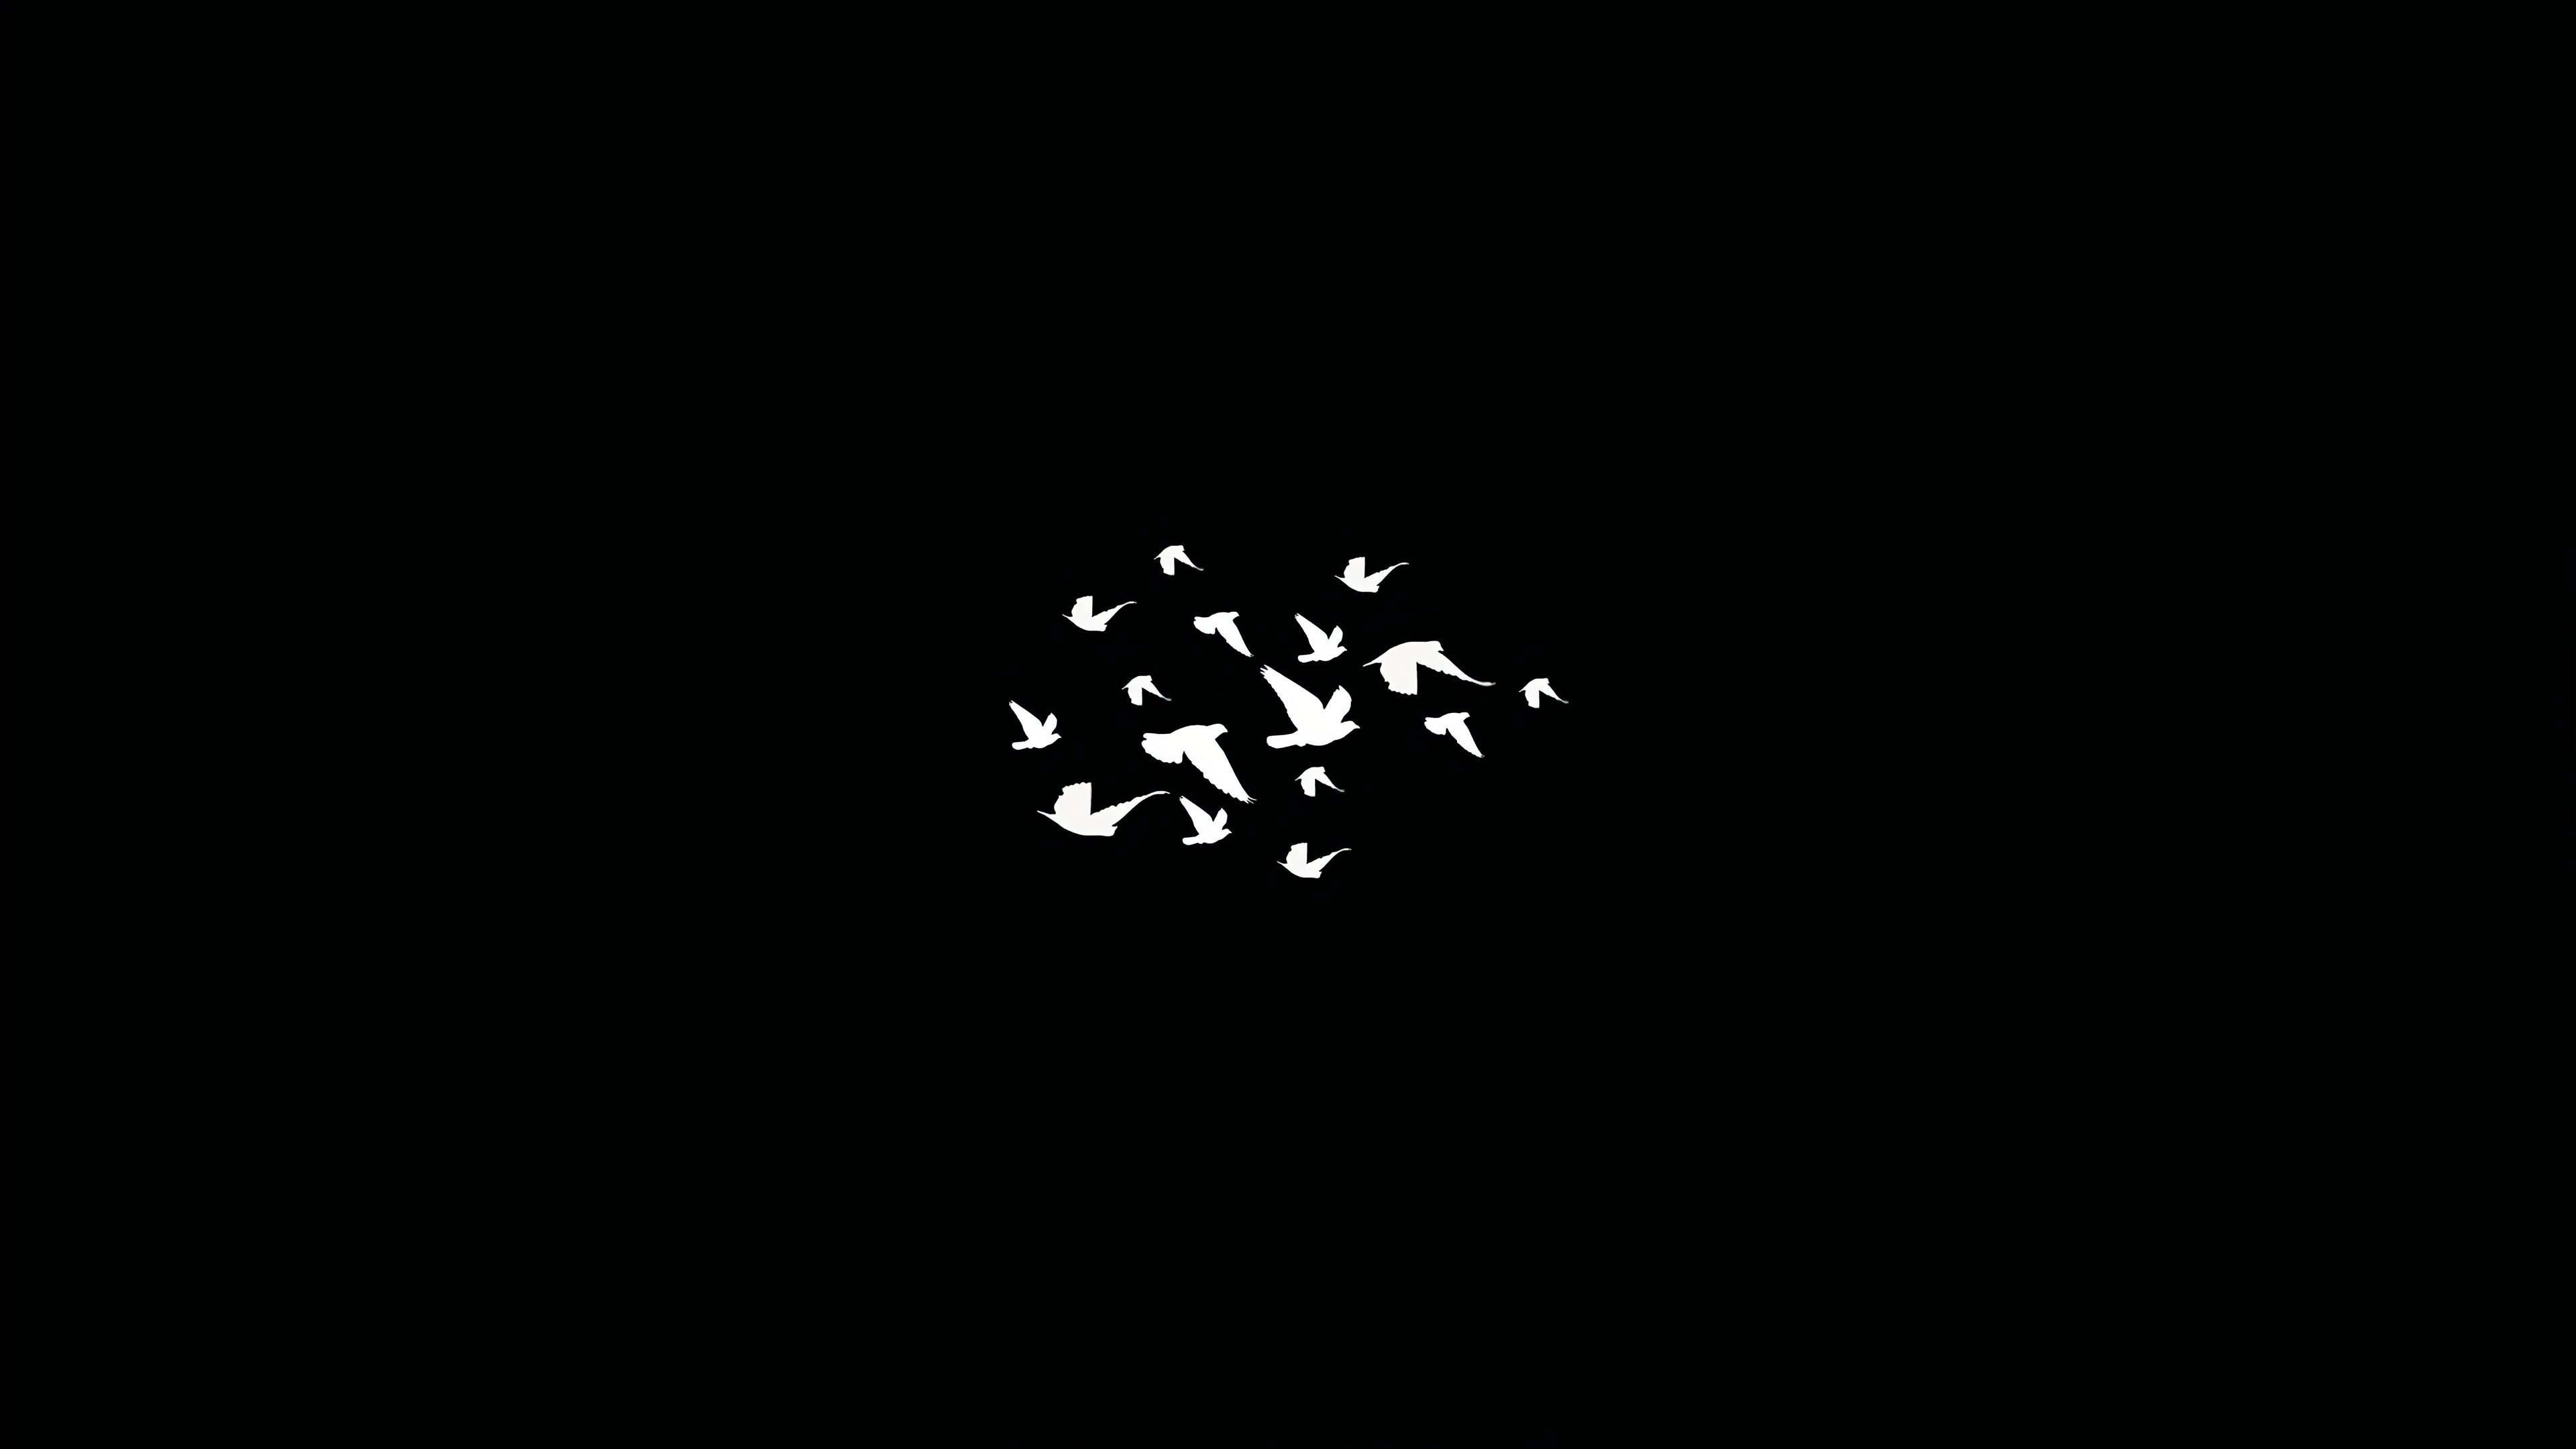 Birds Flying Minimalist Dark 4k, HD Artist, 4k Wallpaper, Image